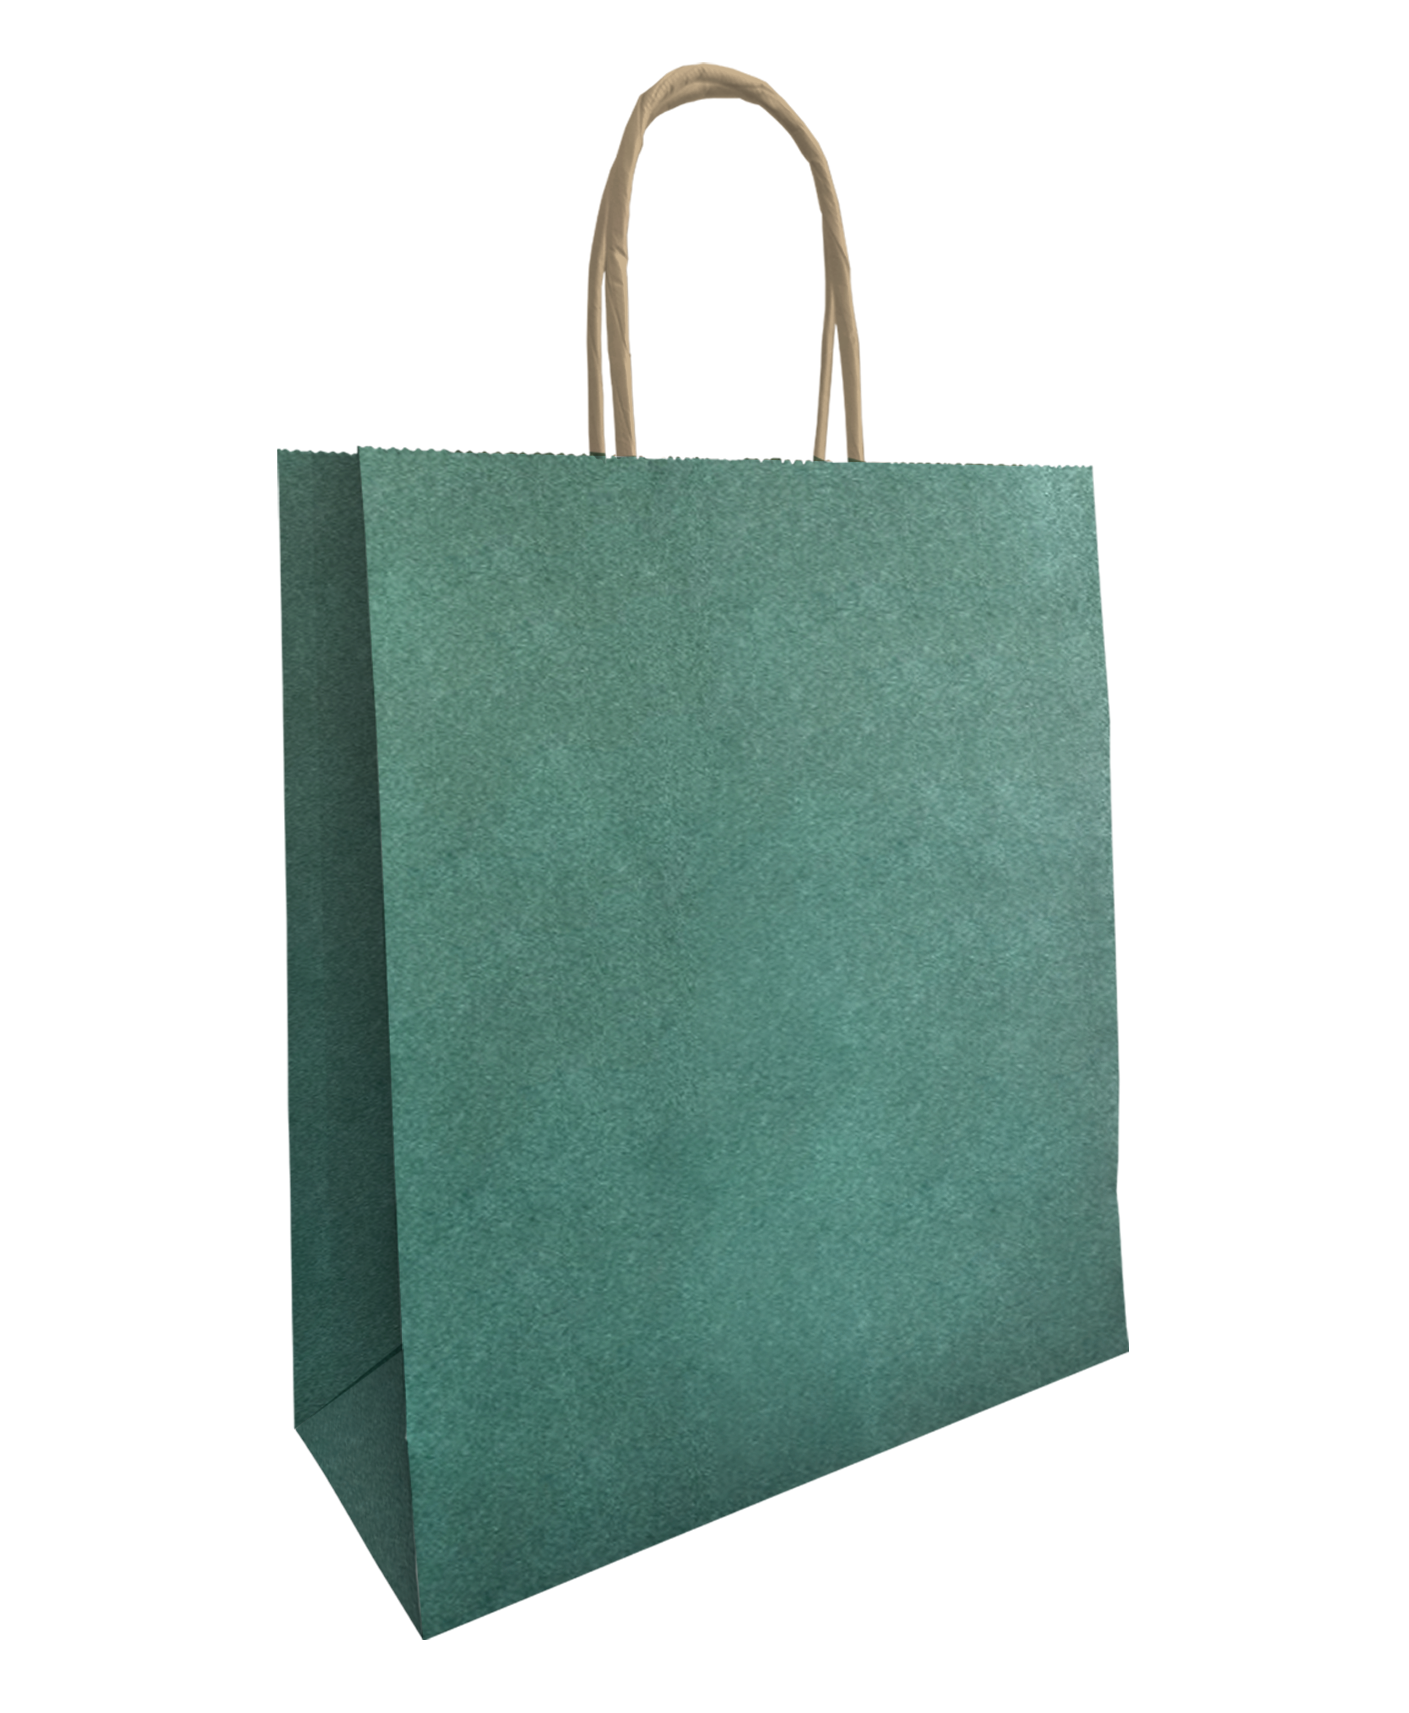 stel je voor Snelkoppelingen Luchtpost Kassaplan-Papieren tassen met gedraaide handgreep, 32+12x41 cm, Donkergroen  glitter